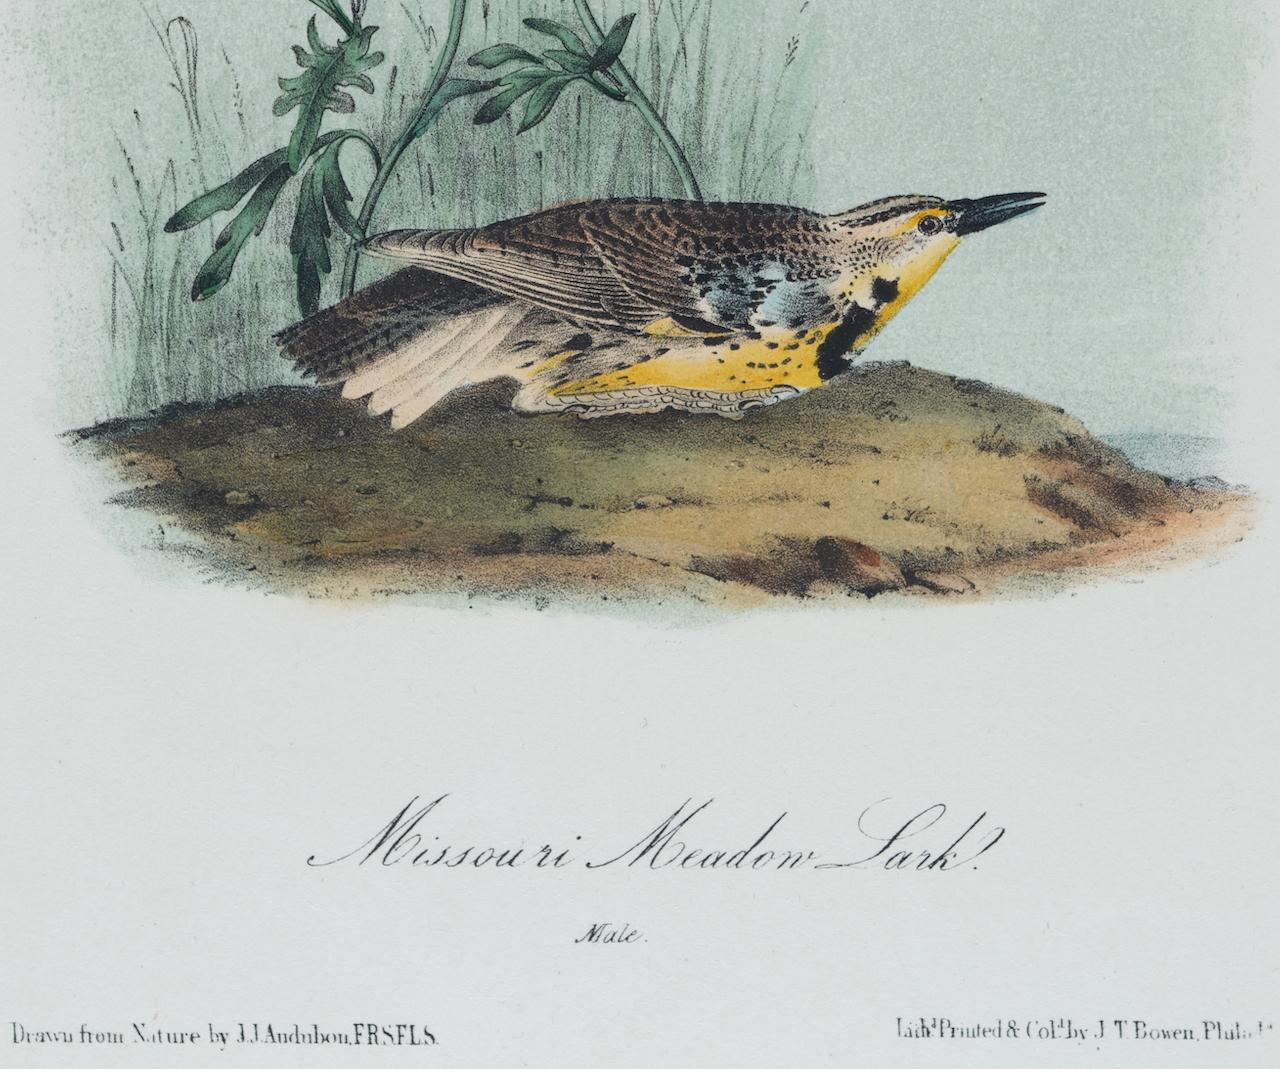 Lark Missouri Meadow Lark : une lithographie originale d'oiseau Audubon du 19e siècle colorée à la main  - Naturalisme Print par John James Audubon